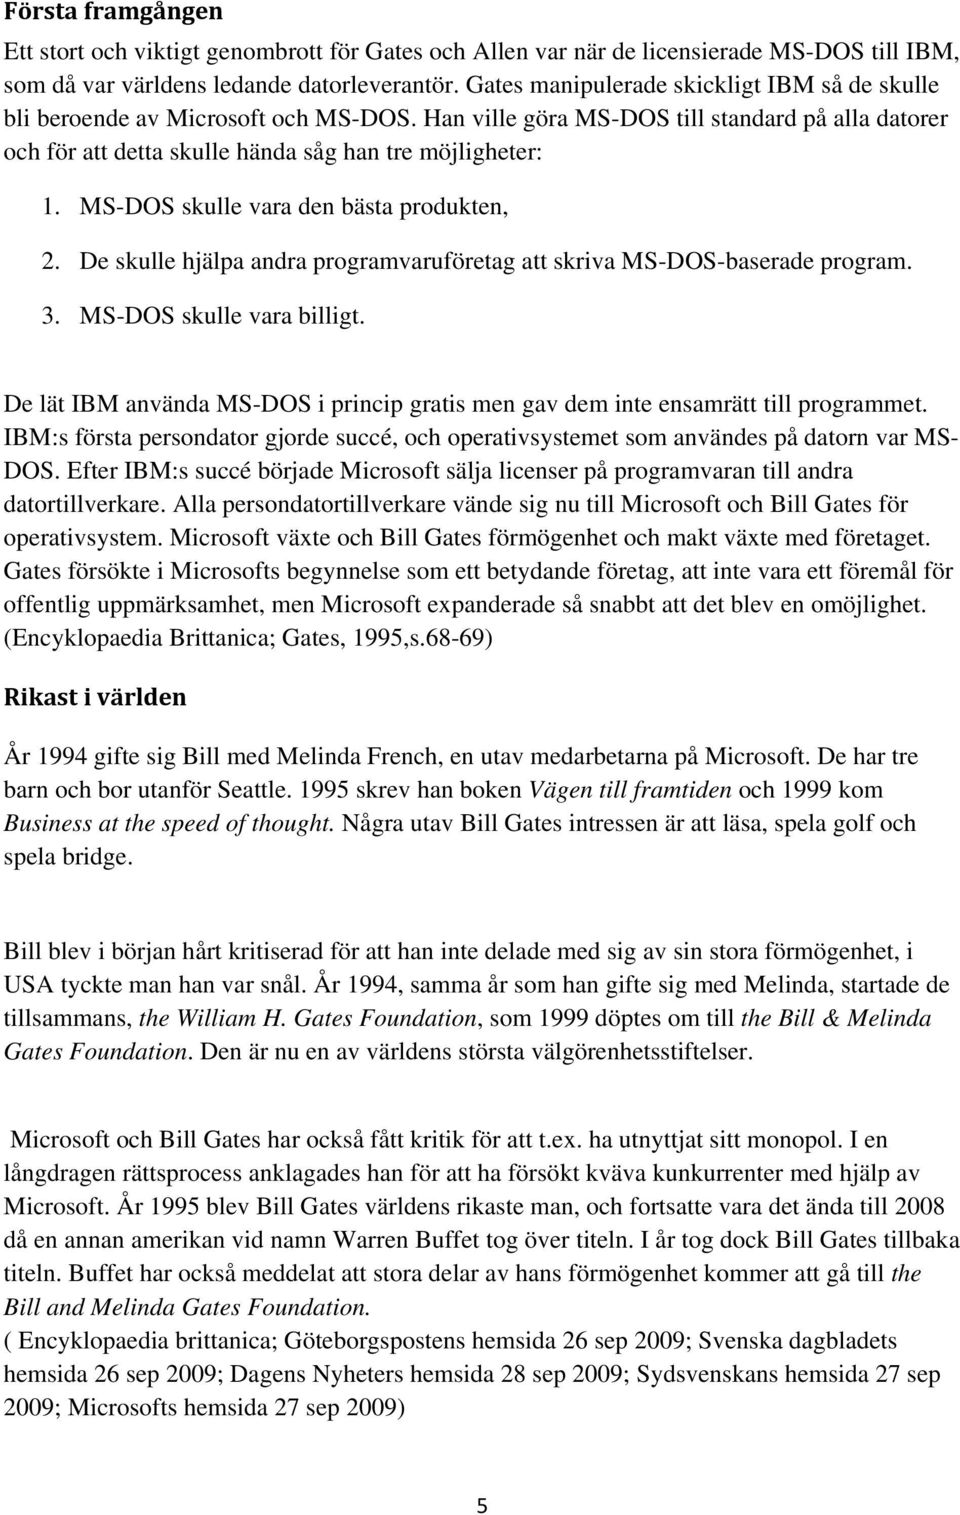 MS-DOS skulle vara den bästa produkten, 2. De skulle hjälpa andra programvaruföretag att skriva MS-DOS-baserade program. 3. MS-DOS skulle vara billigt.